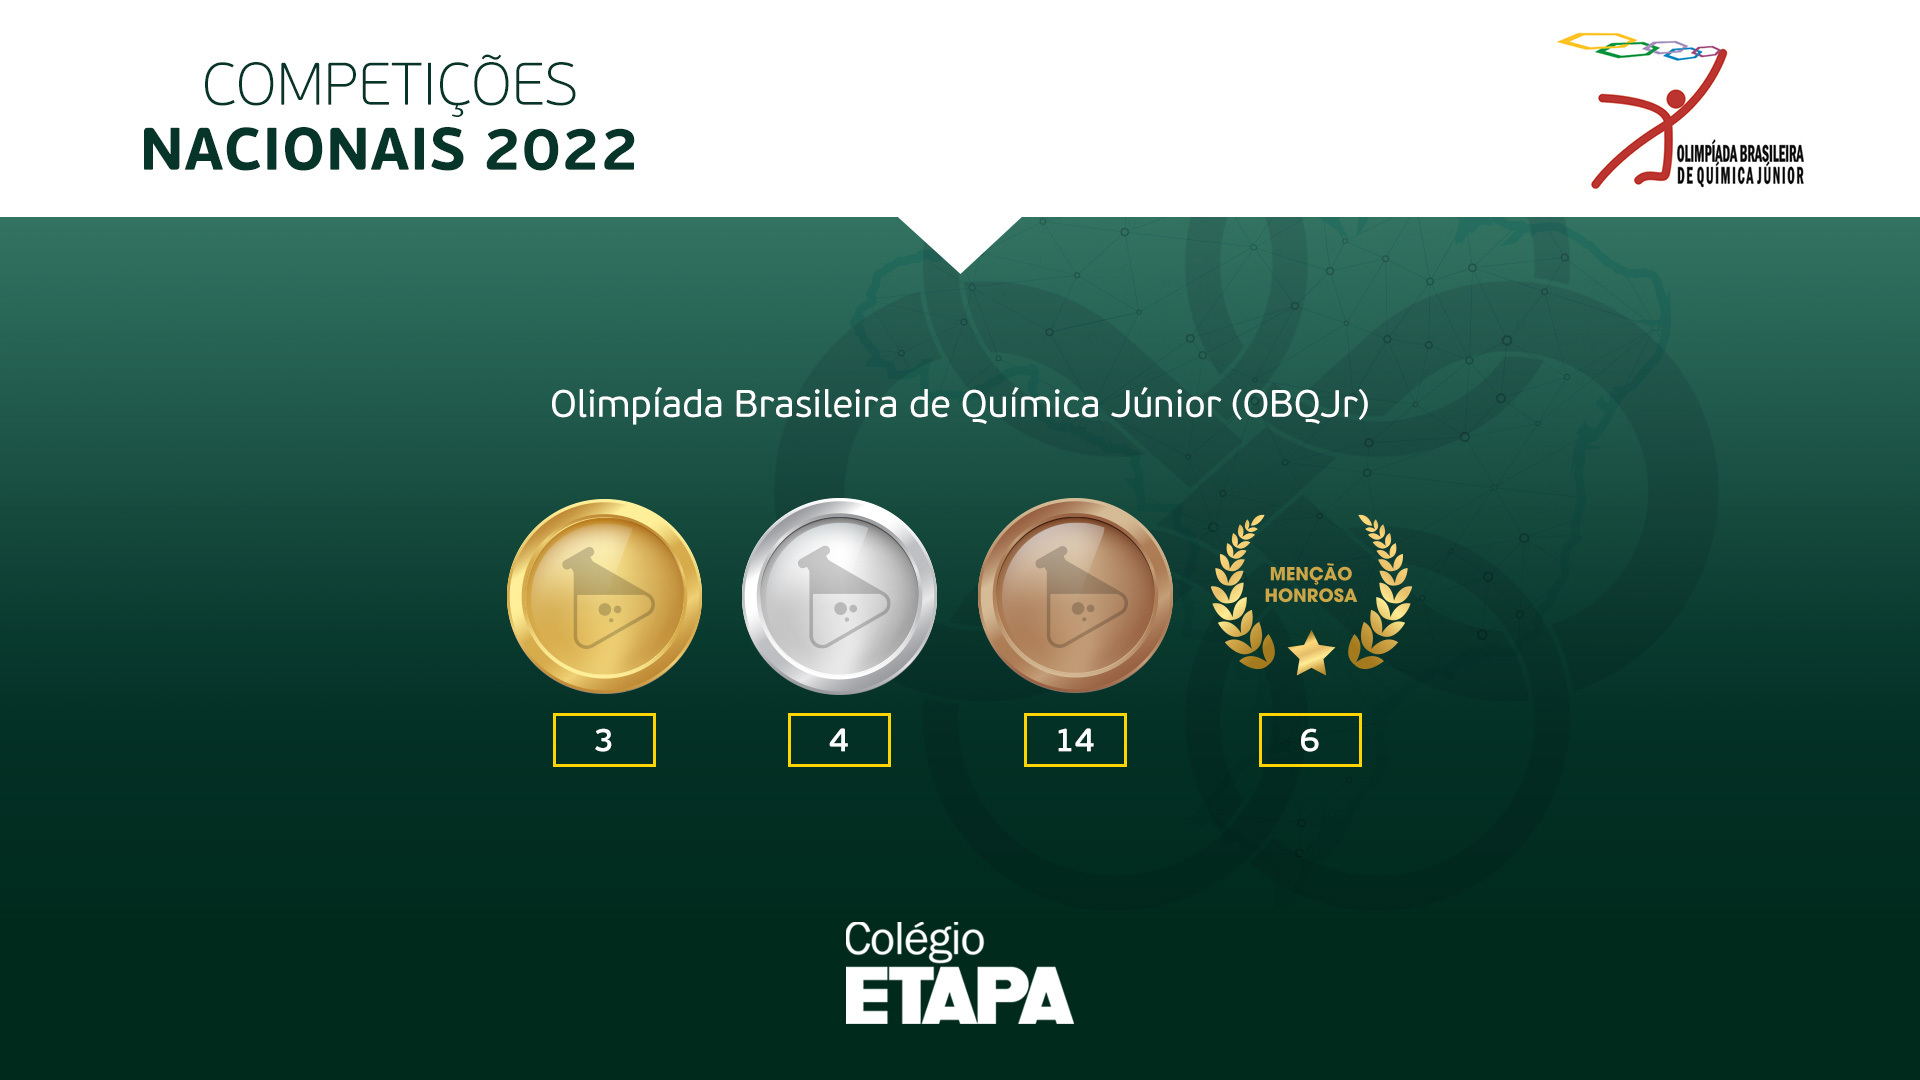 Alunos do Colégio Etapa receberam 27 premiações na OBQJr 2022: três medalhas de ouro, quatro medalhas de prata, 14 medalhas de bronze e seis menções honrosas.